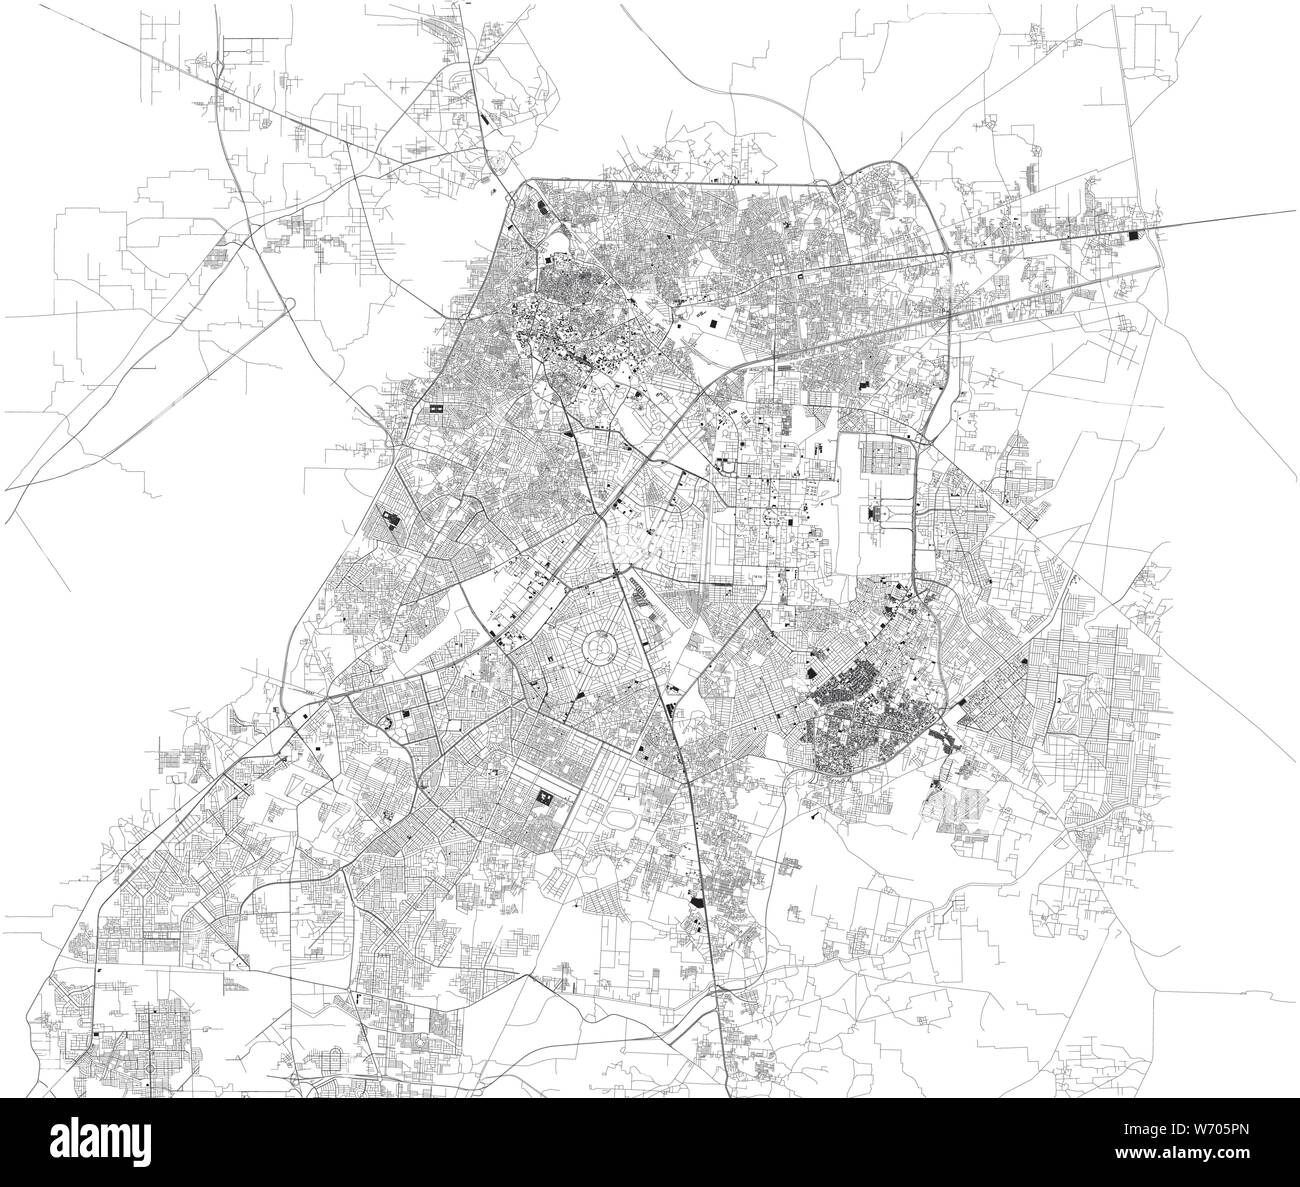 Mappa satellitare di Lahore, è la capitale della provincia pakistana del Punjab. Mappa di strade e di edifici del centro storico. Il pakistan. Asia Illustrazione Vettoriale